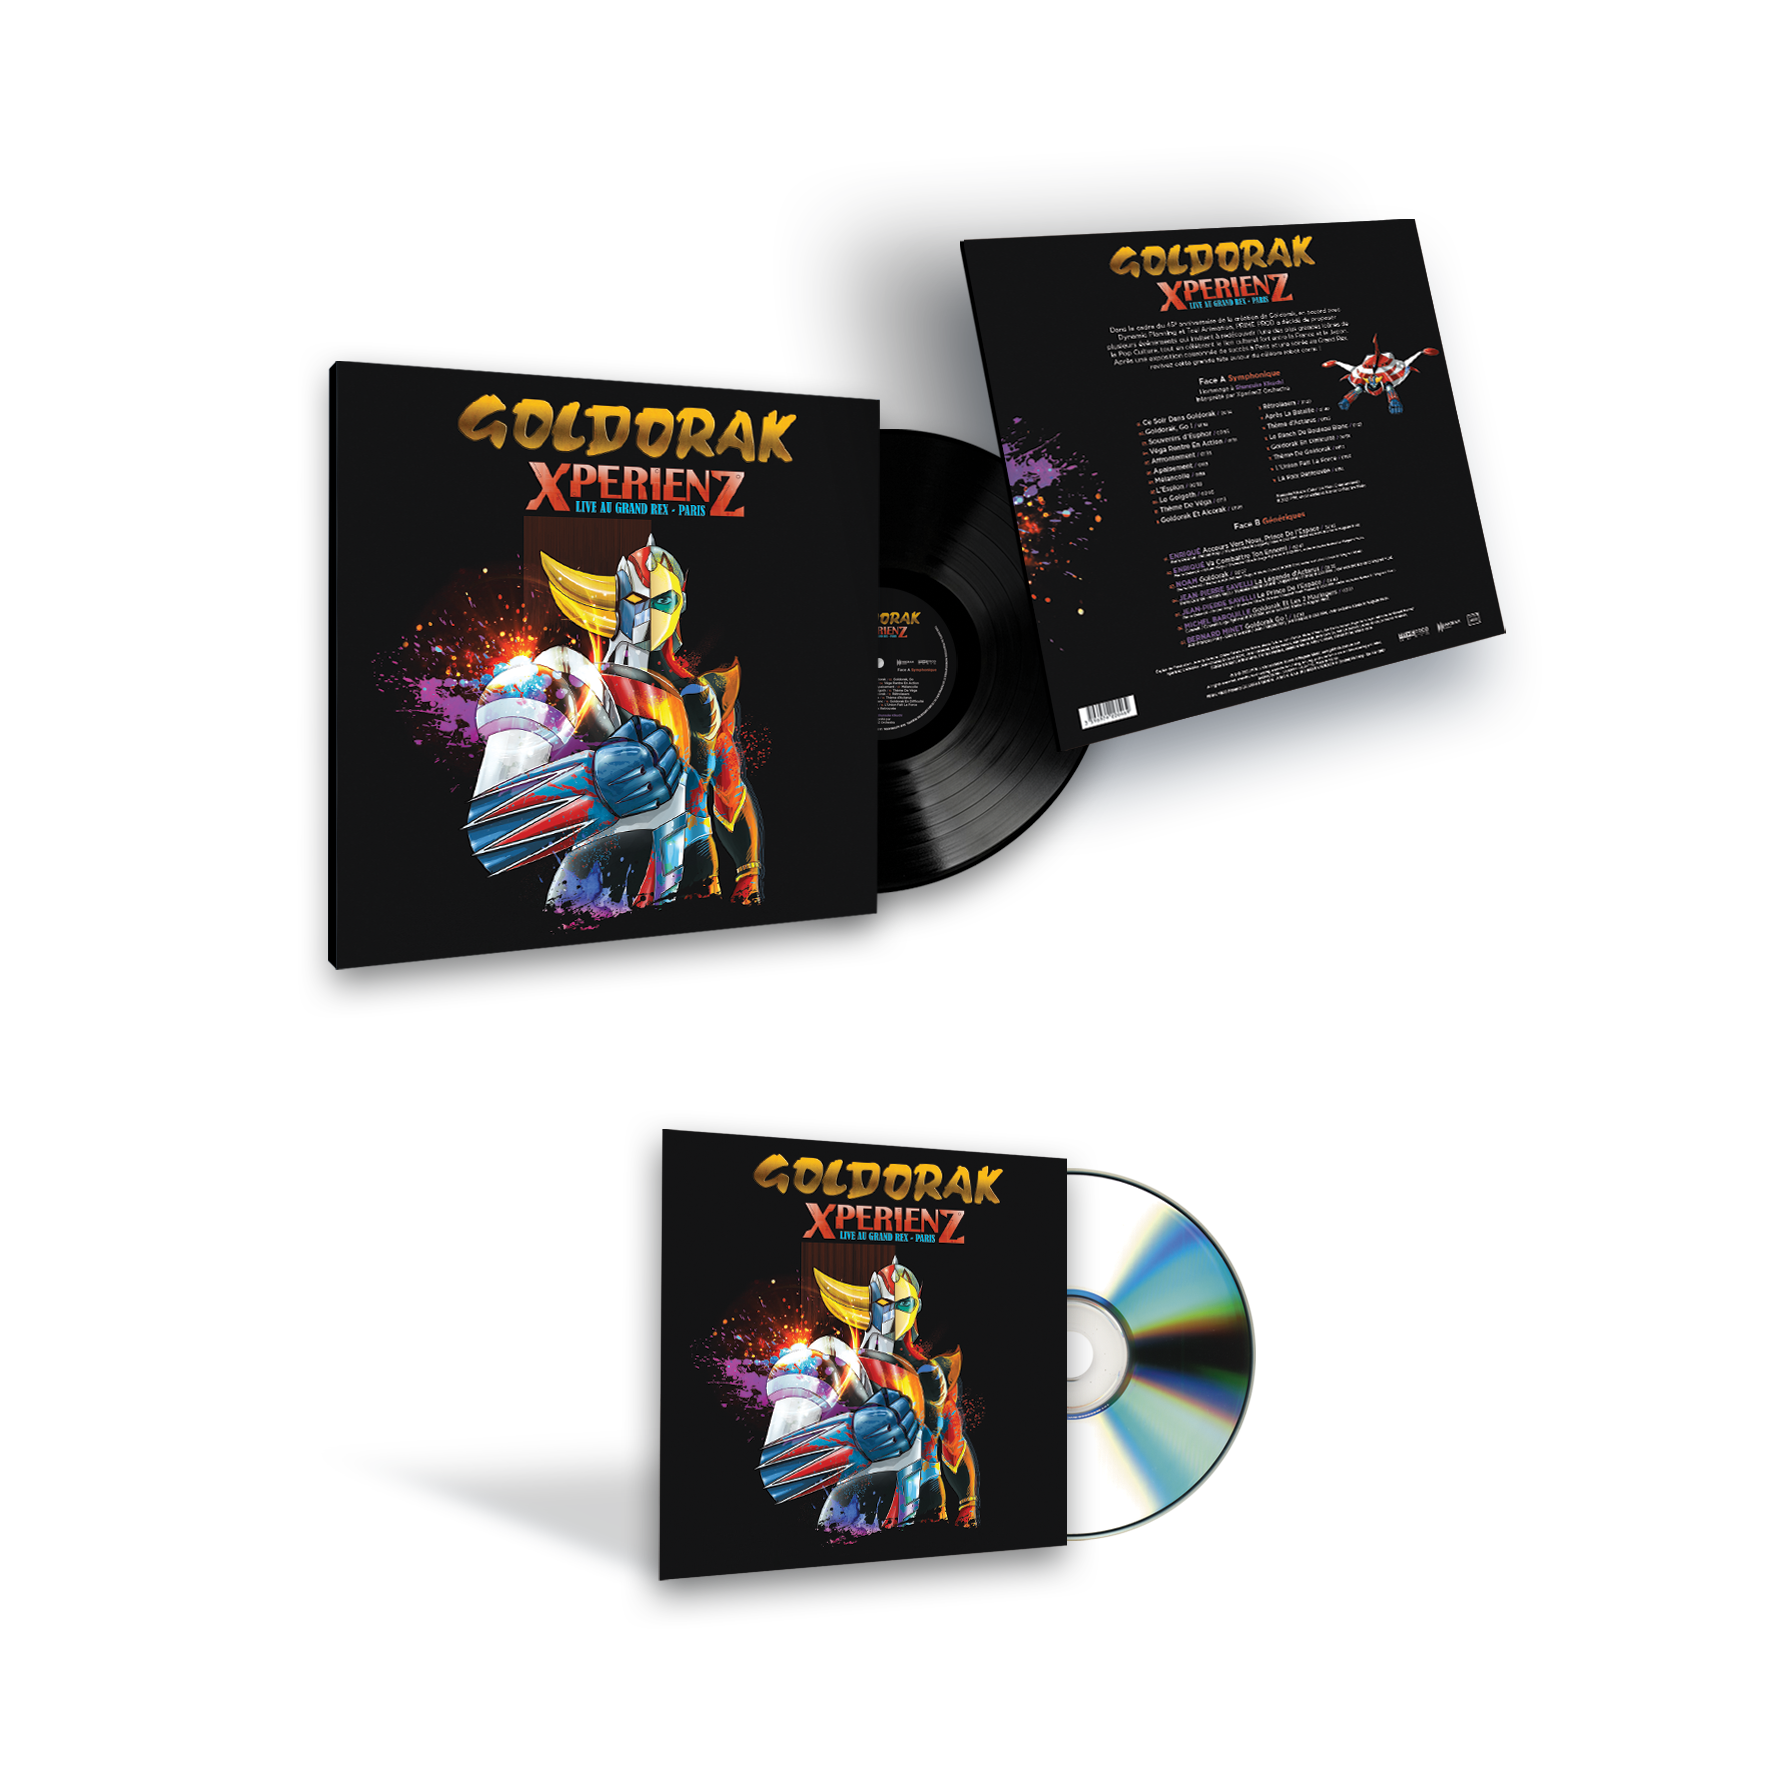 Coffret DVD Goldorak Intégrale - Label Emmaüs